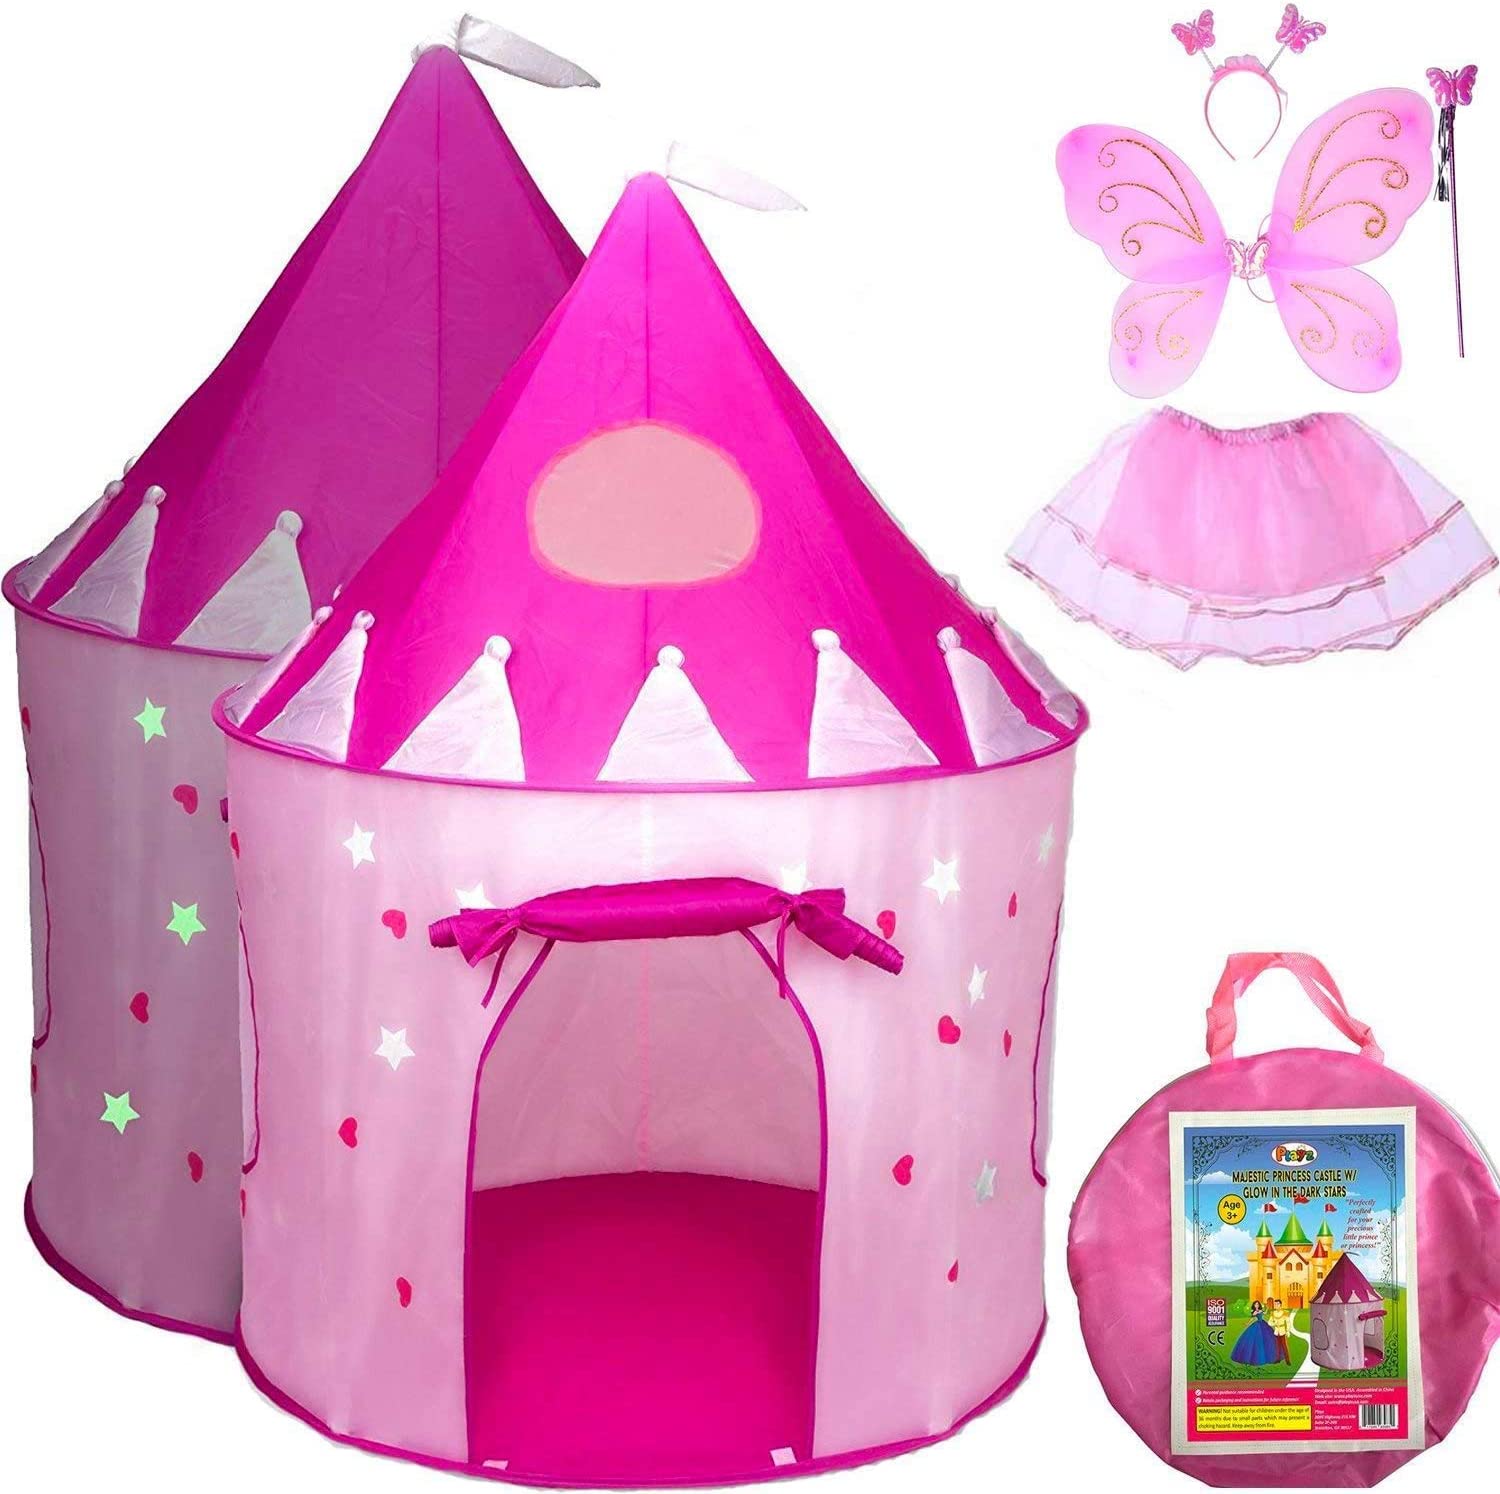  4. Princess Castle Pop-up Play Tent & Dress Up Costume Bundle 